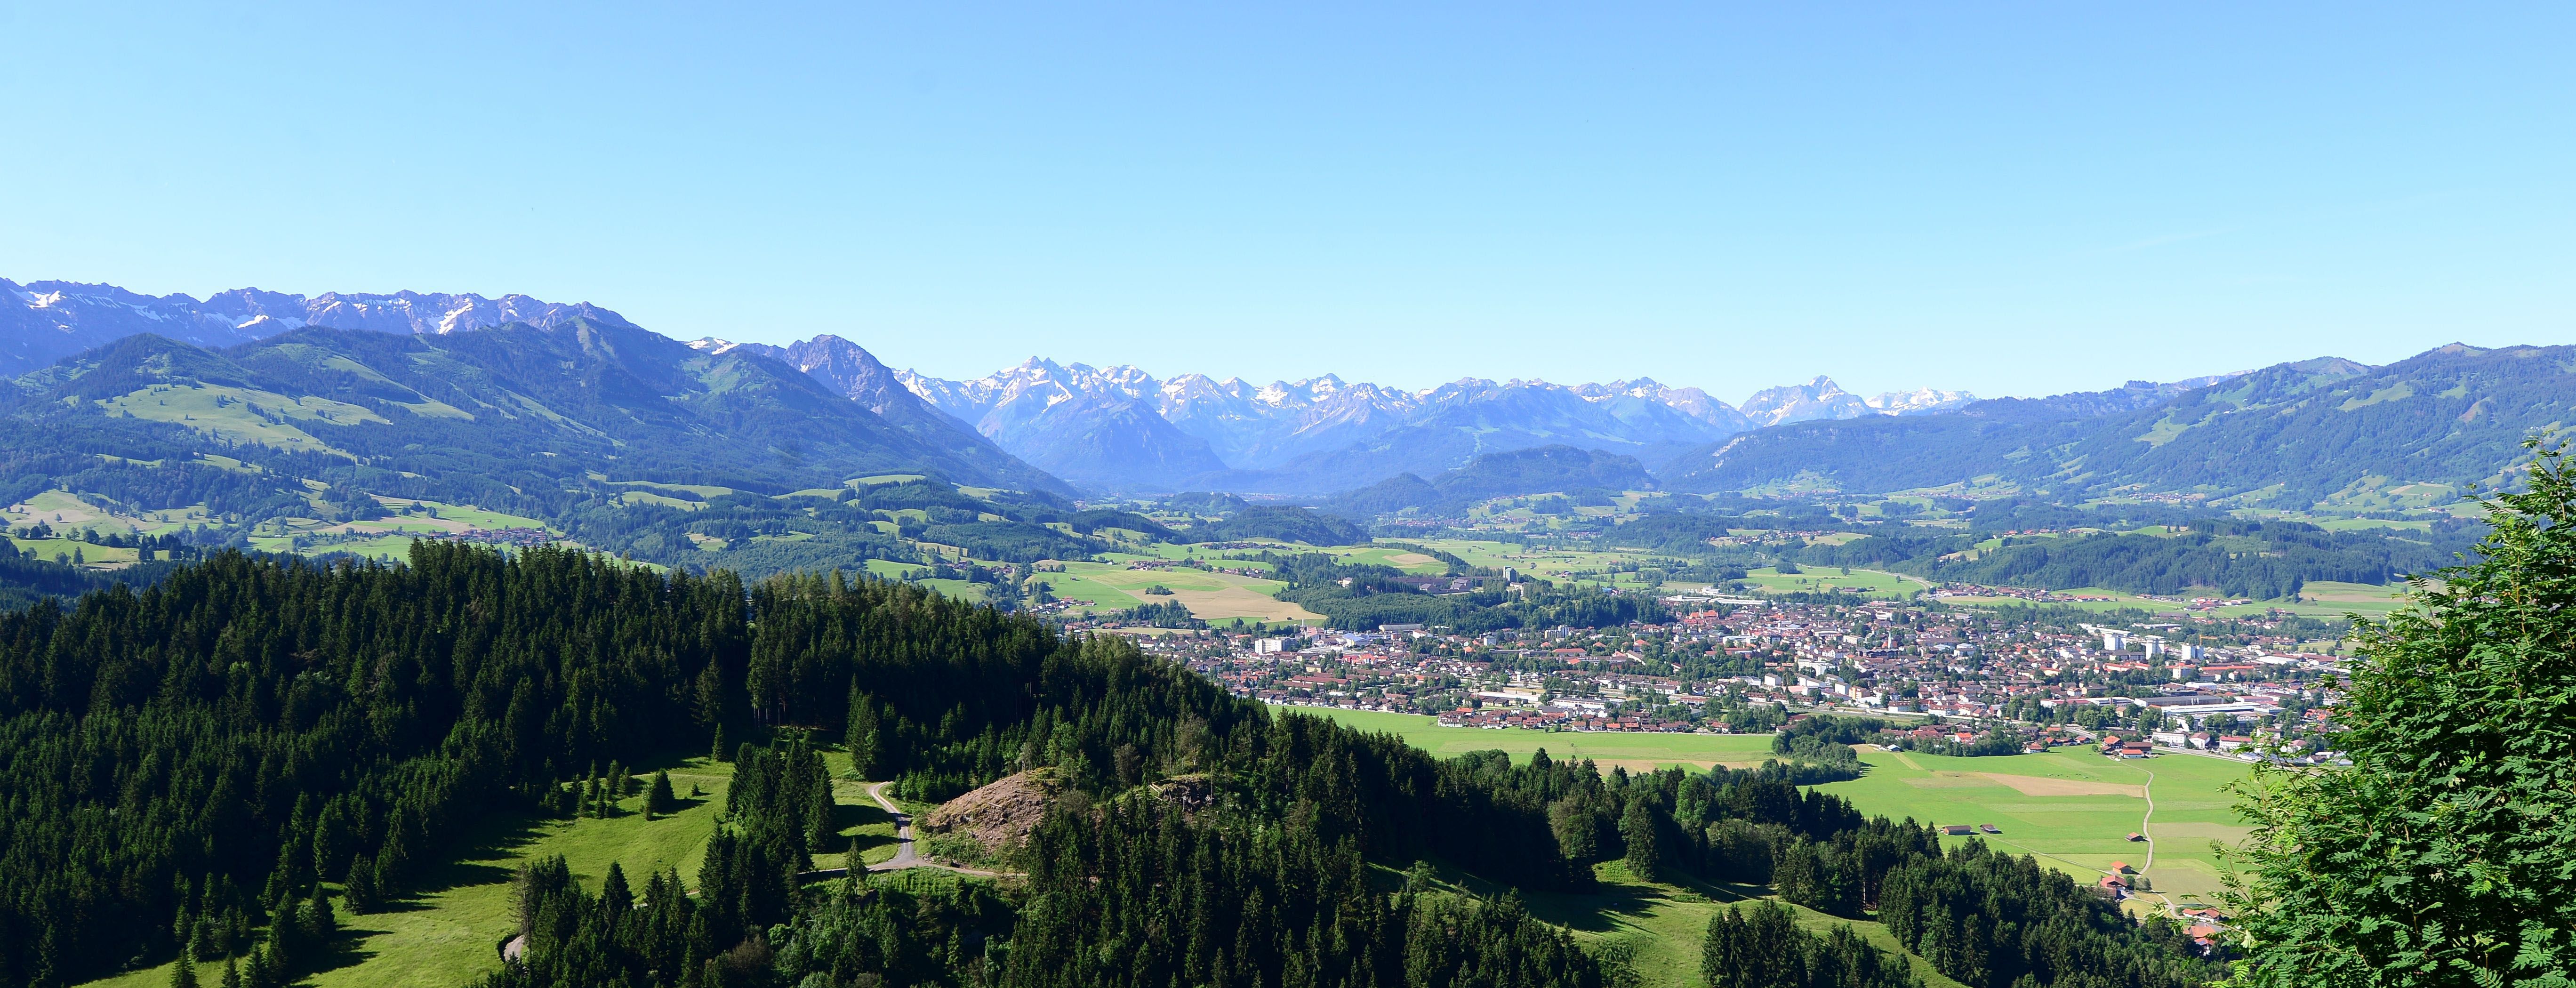 Bei einer Wanderung auf den Grünten ergibt sich oberhalb der Alpe Weiherle einen herrlichen Ausblick auf die Stadt Sonthofen, die Sonnenkopf-Gruppe und das Naturschutzgebiet Allgäuer Hochalpen.